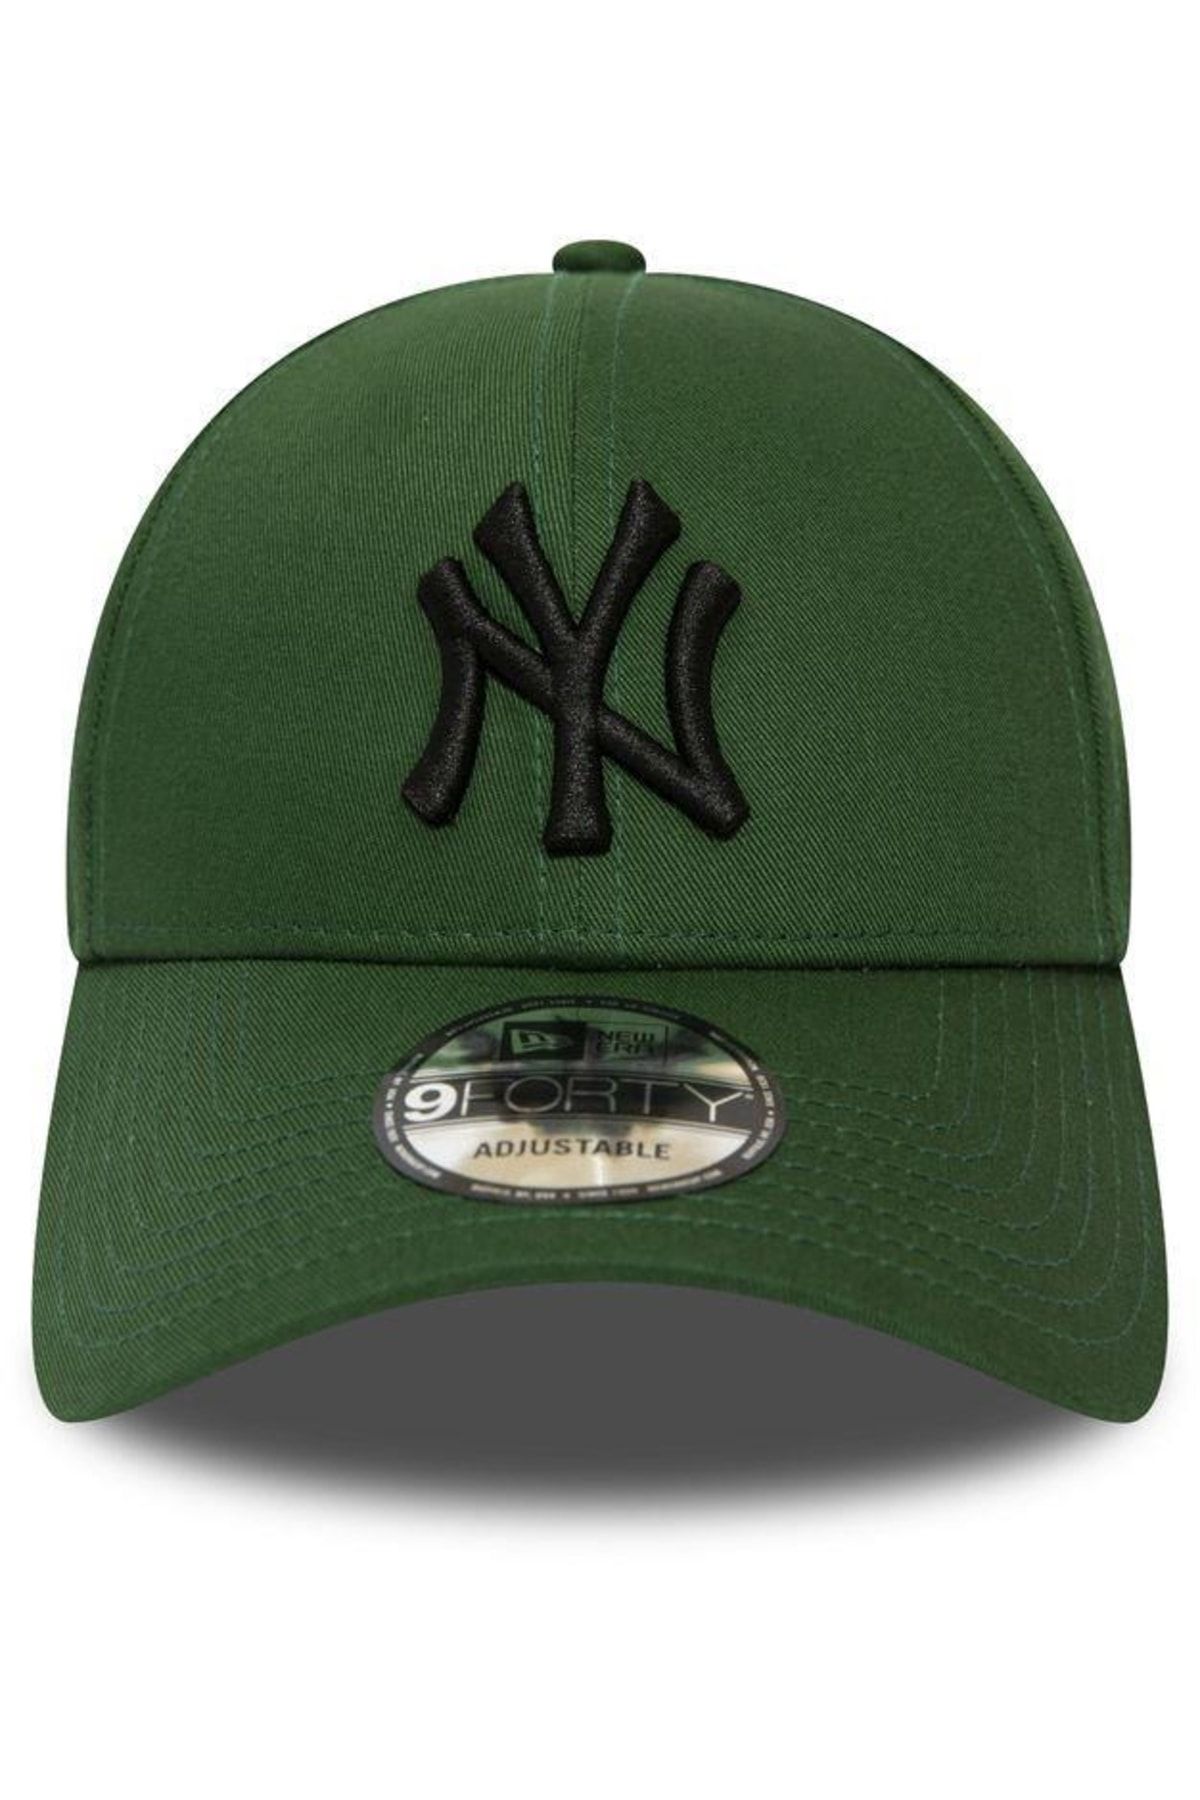 Takı Dükkanı Yeşil Ny Cap Siyah Nakışlı Unisex Şapka Cp220